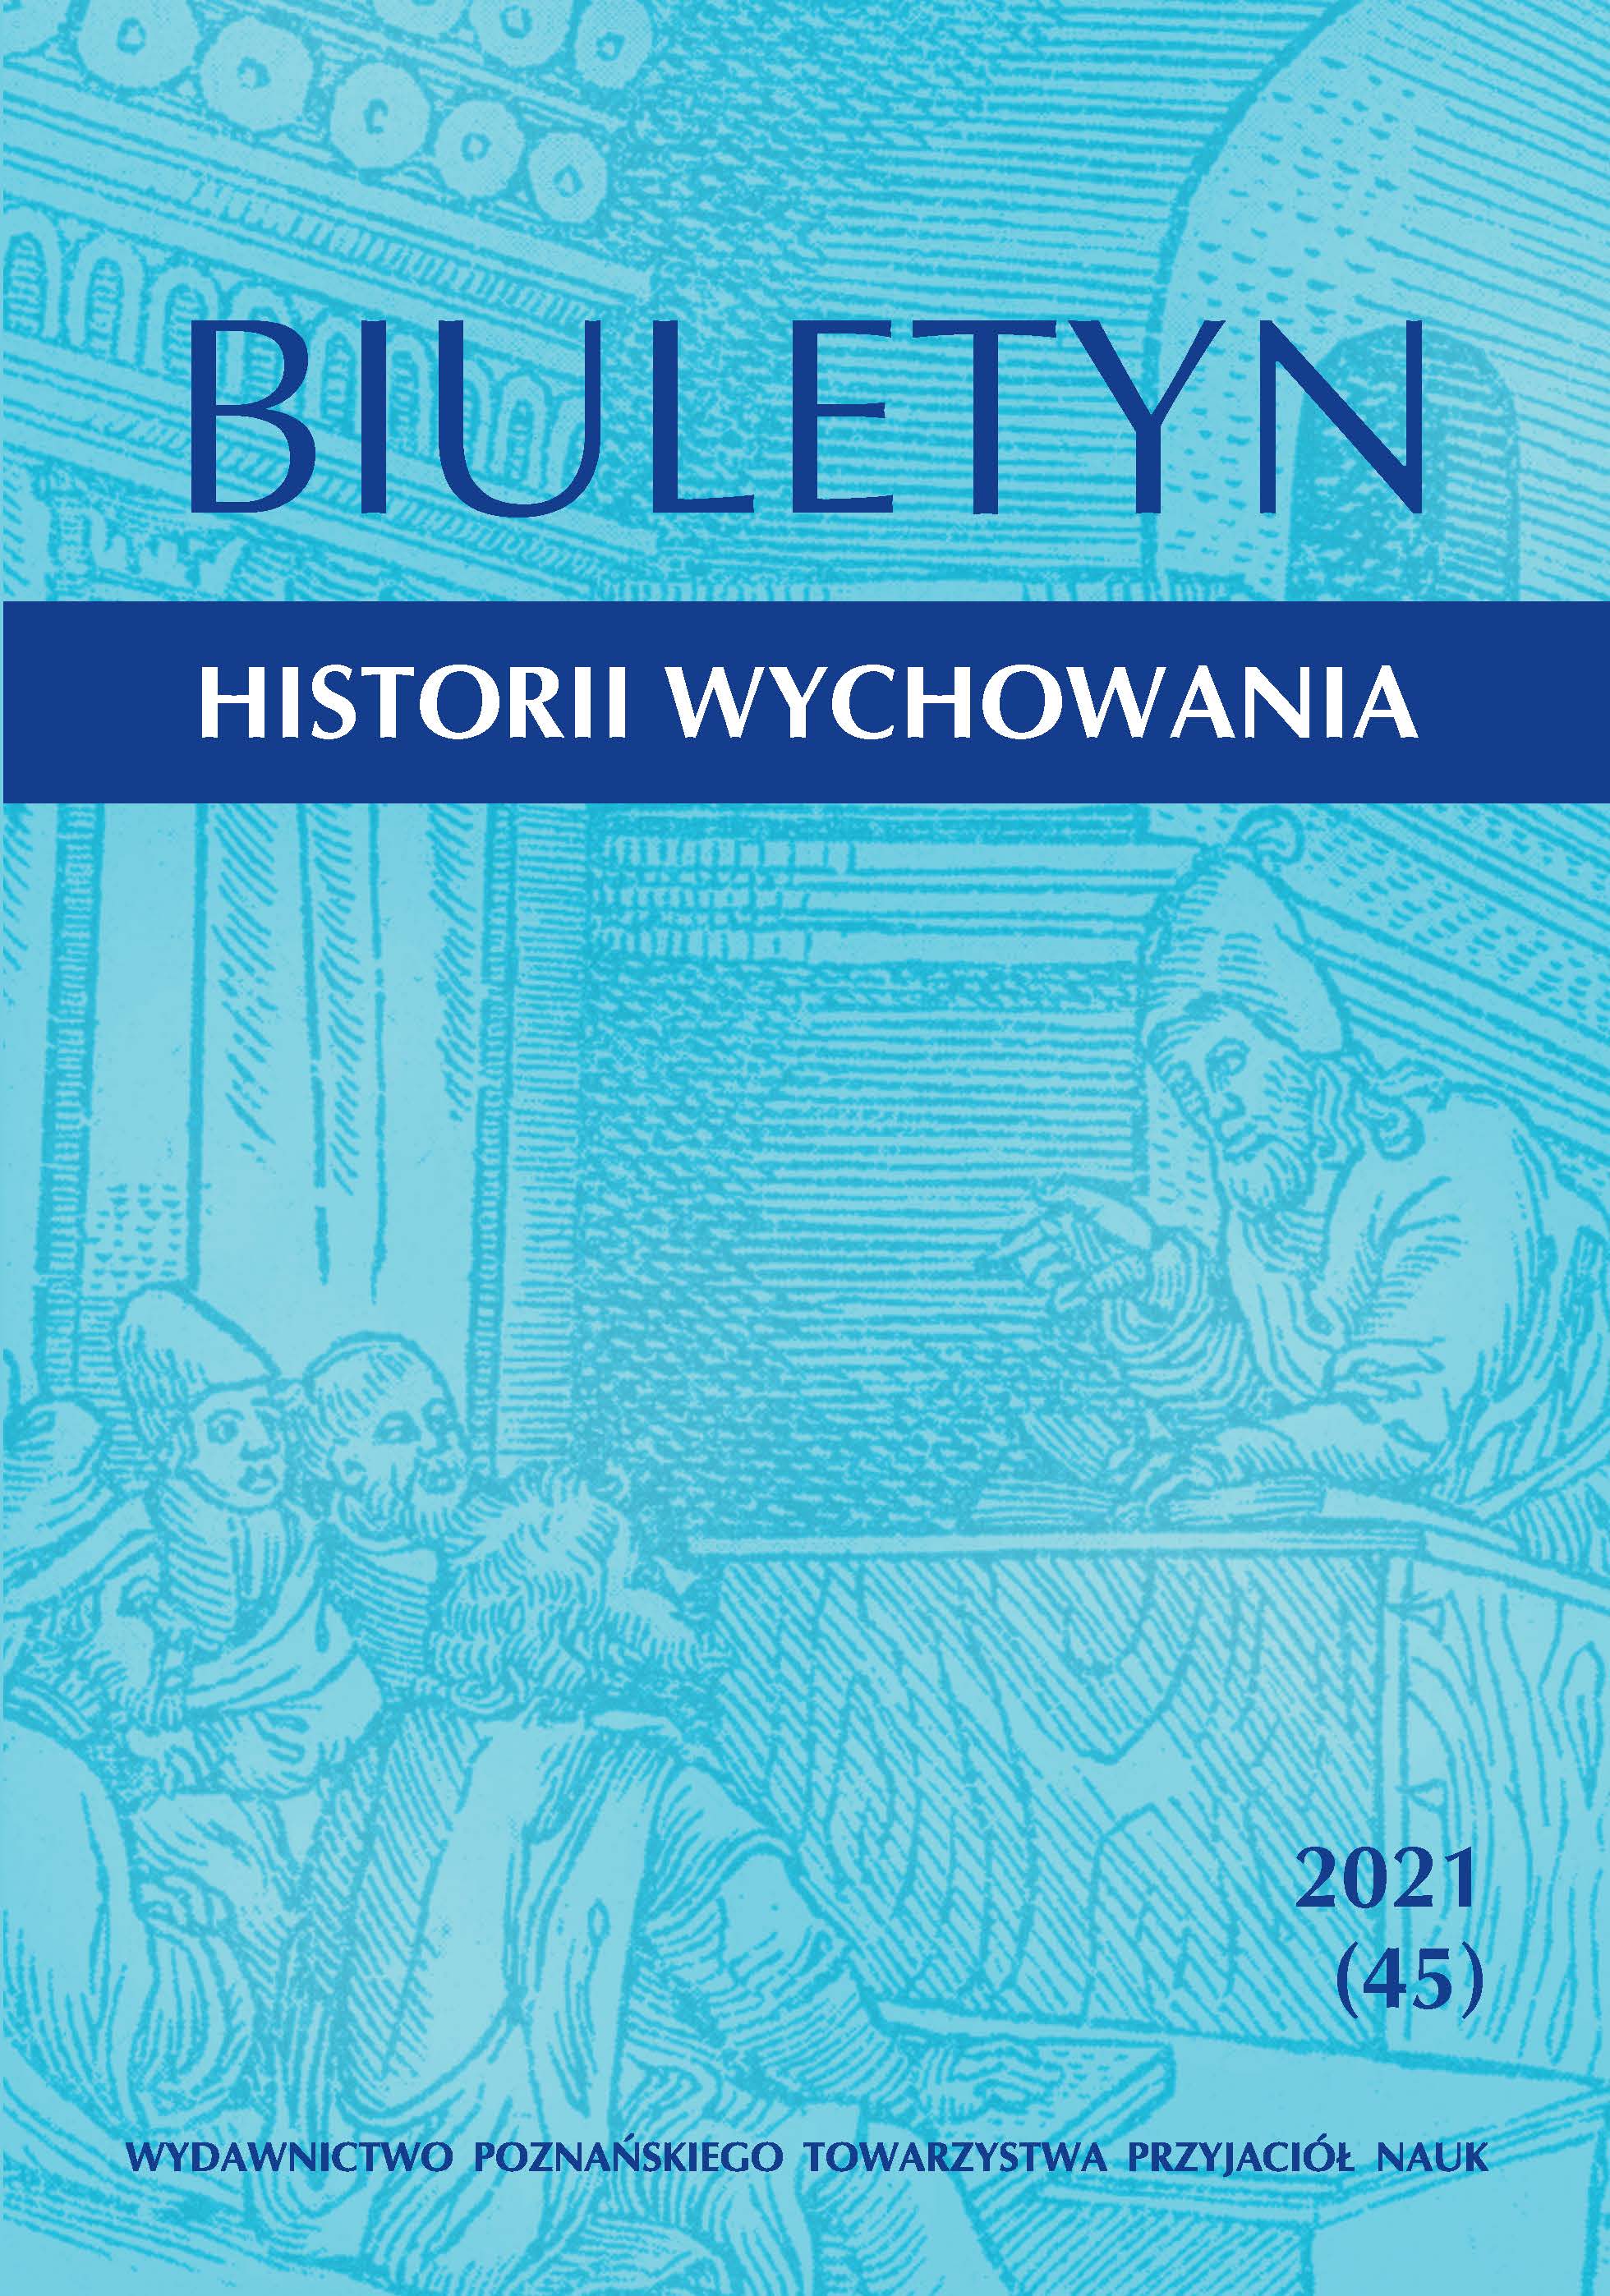 Bibliografia historii wychowania, szkolnictwa i myśli pedagogicznej w Polsce za rok 2020 (z uzupełnieniami za lata poprzednie)